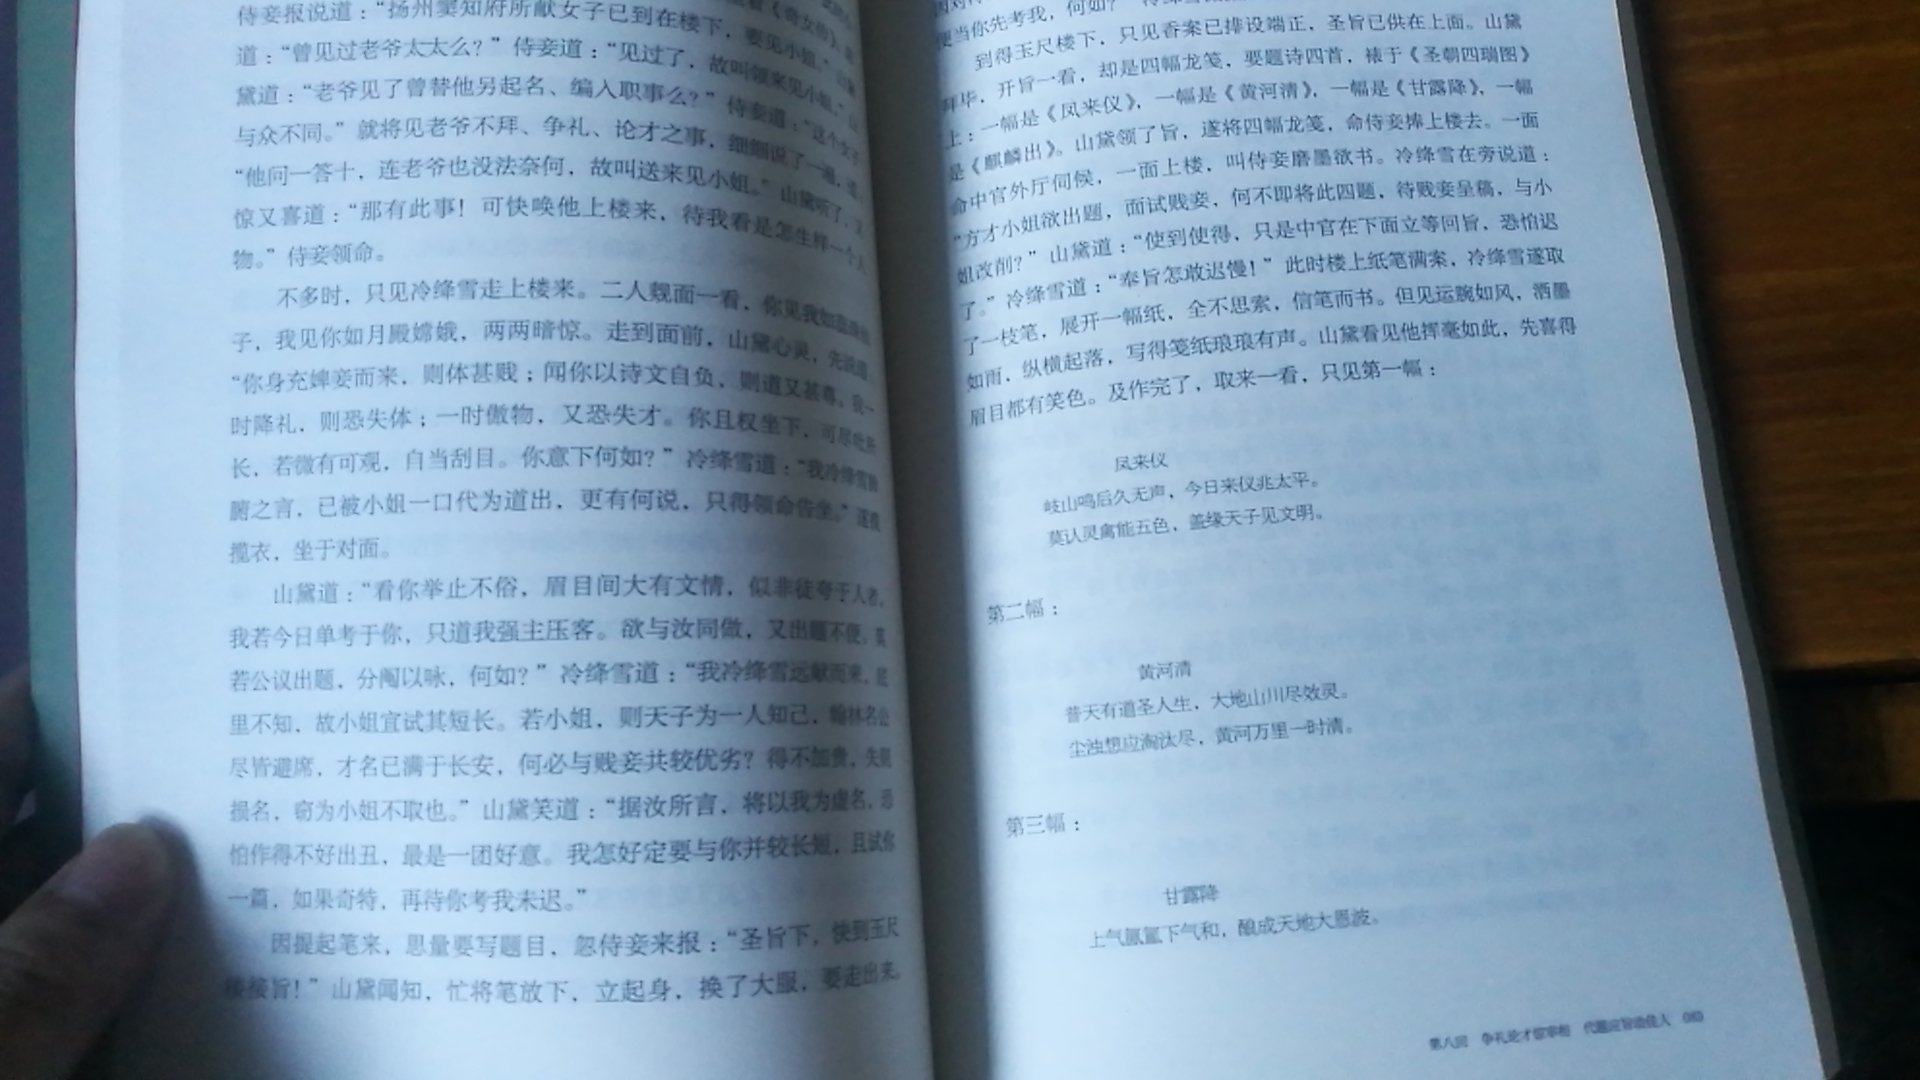 很喜欢这种古典言情小说，华文出版社出的这个版本也很不错，纸张、印刷、封面设计都很不错